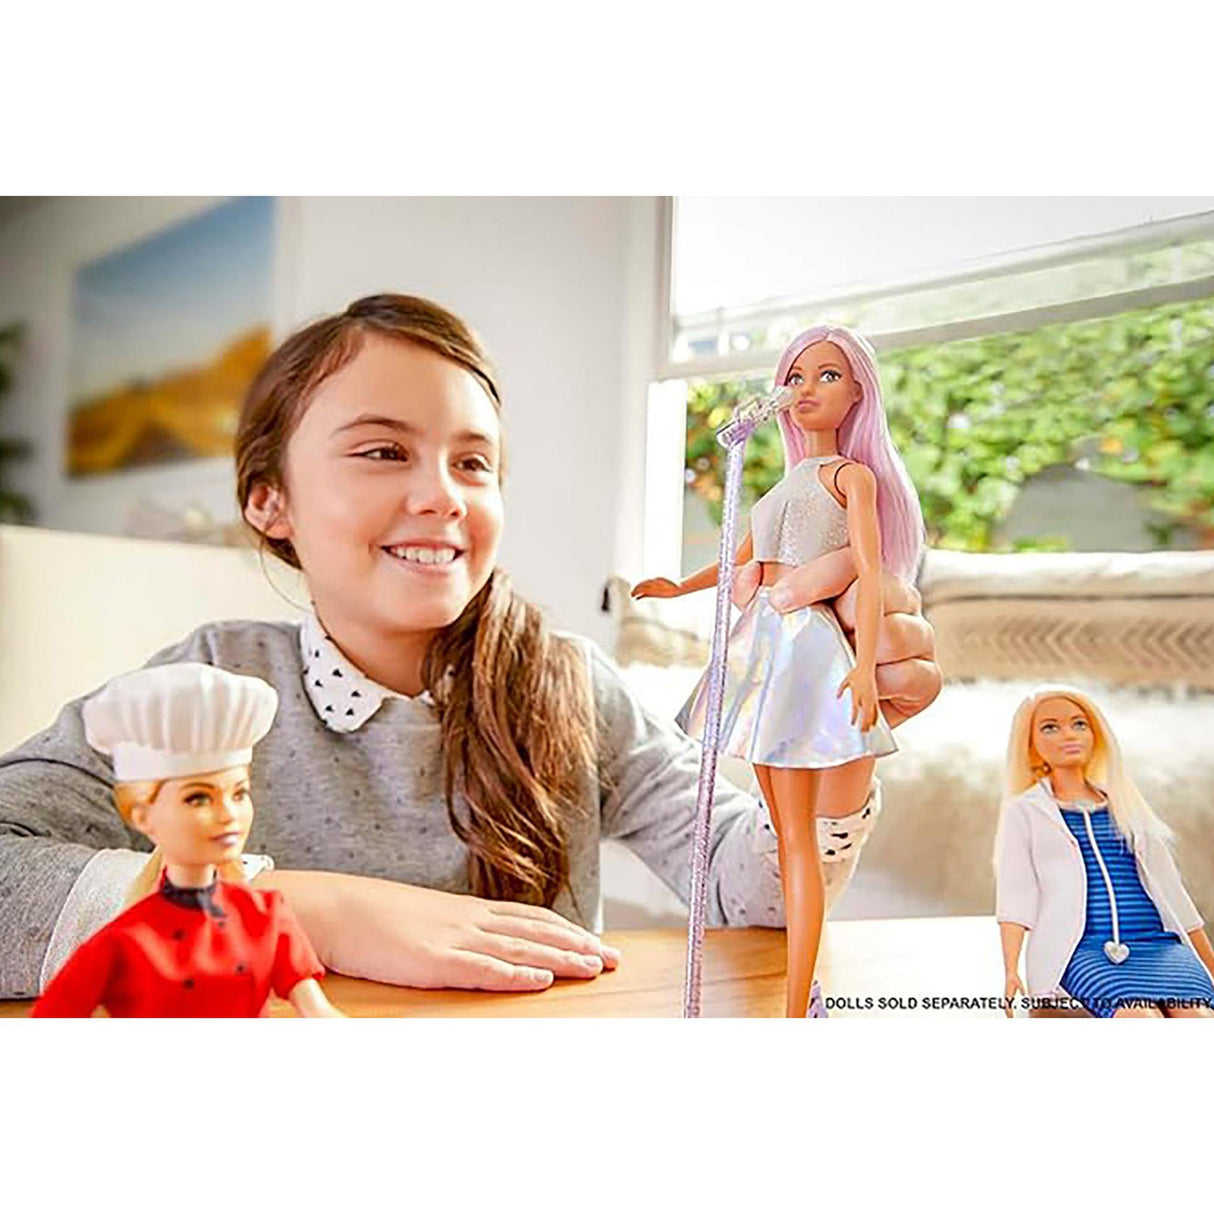 Barbie Careers Doll Pop Star